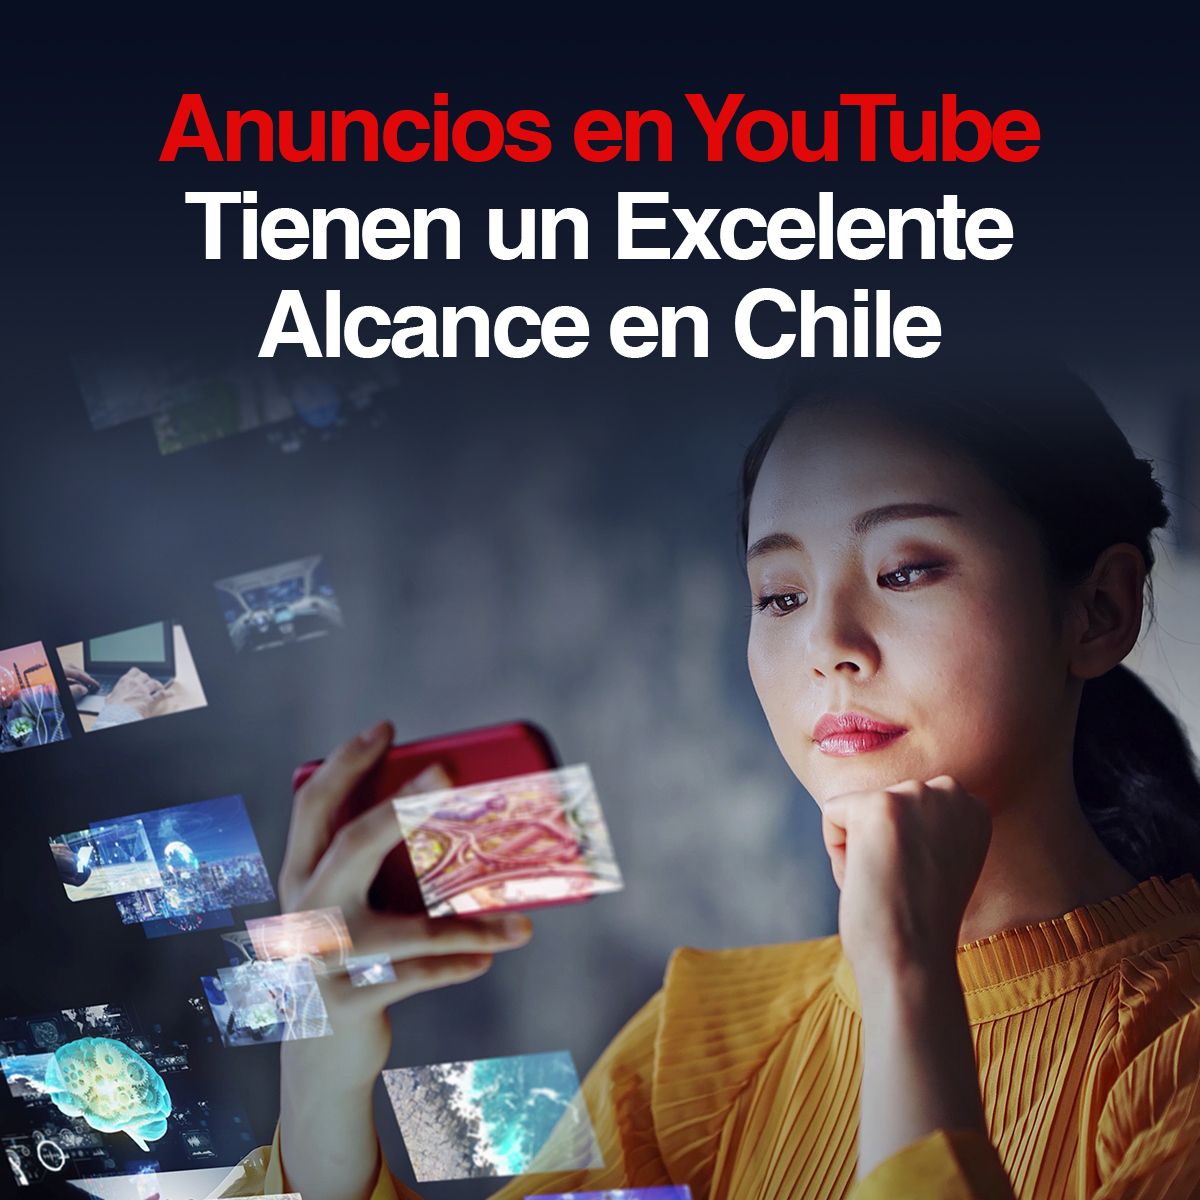 Anuncios en YouTube Tienen un Excelente Alcance en Chile